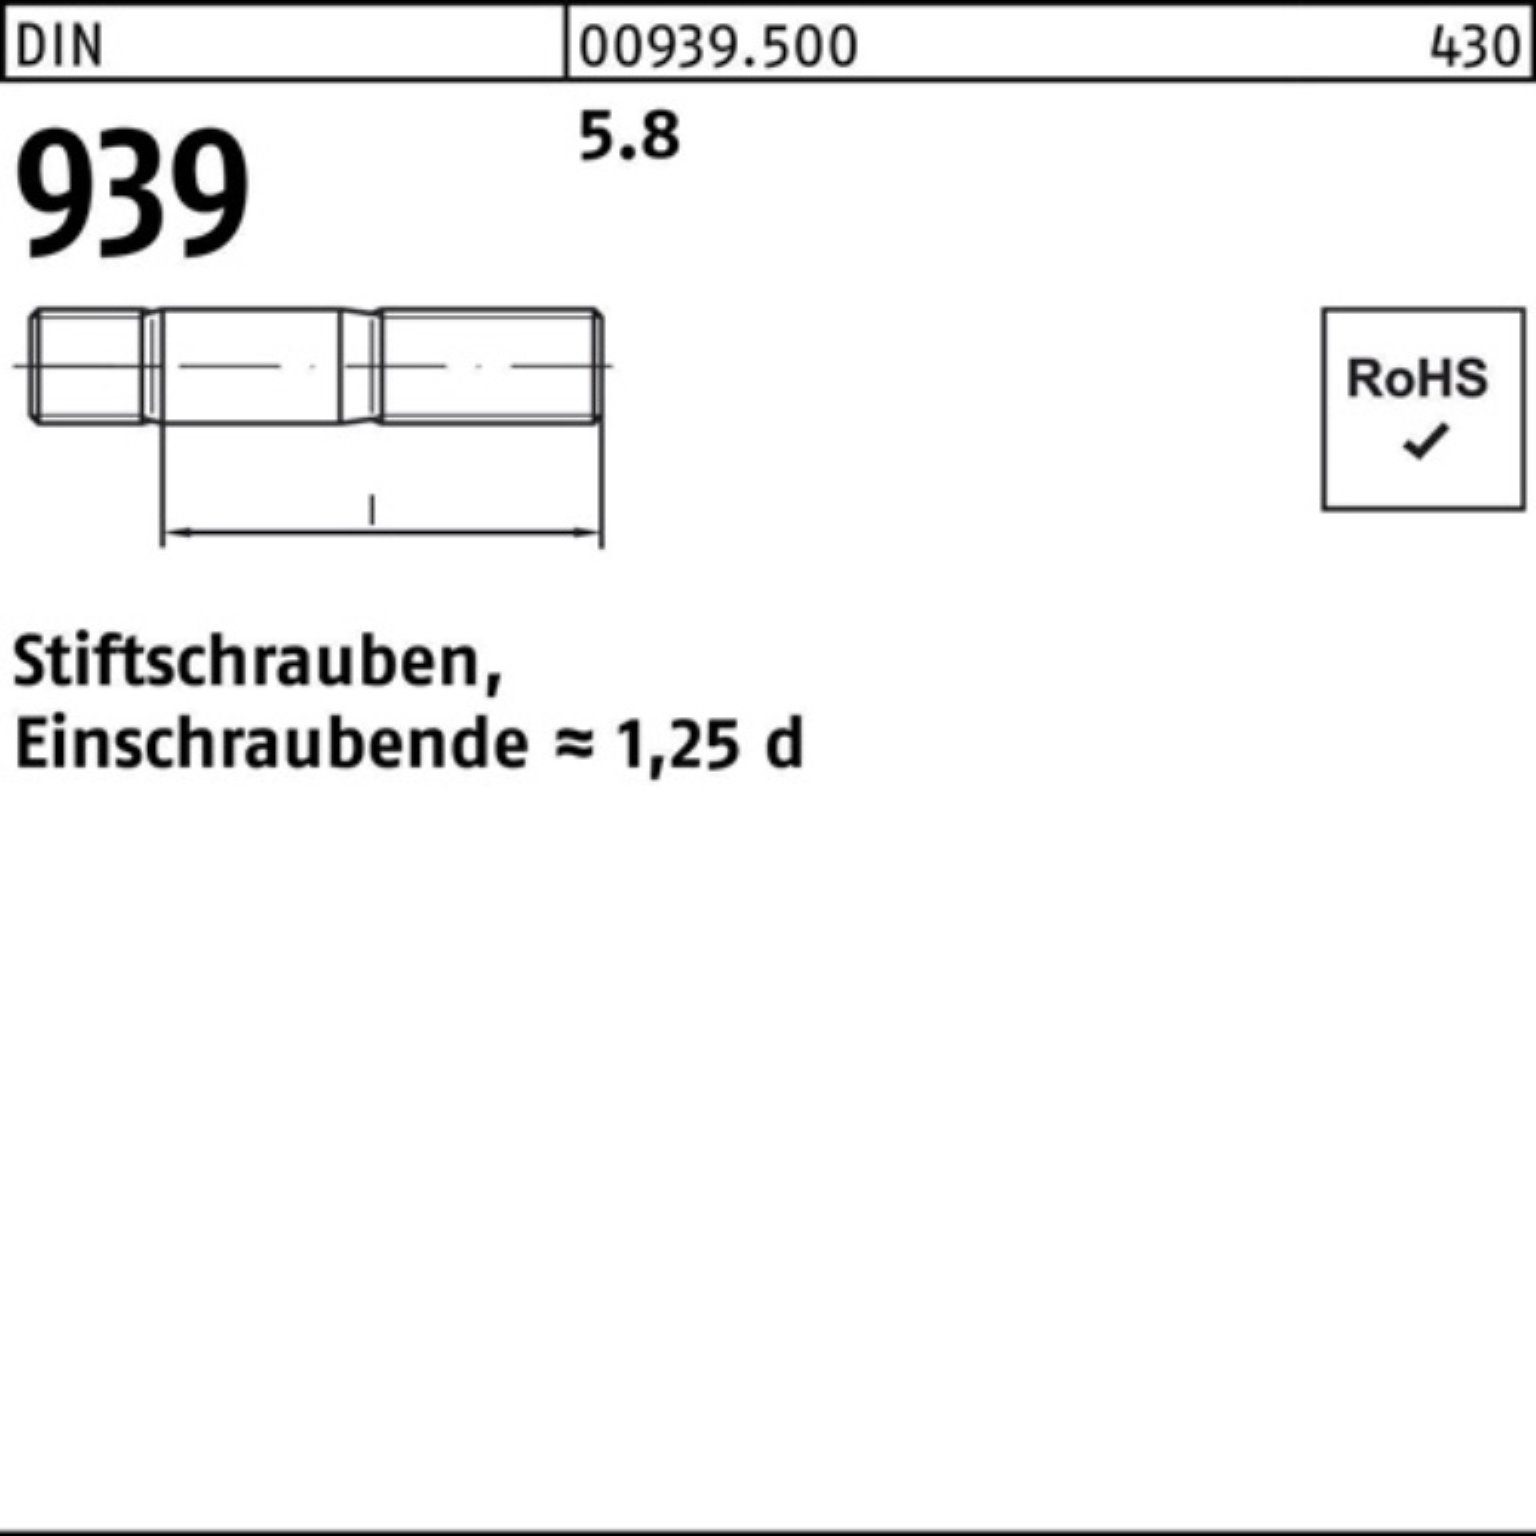 130 M30x 5.8 Stiftschraube Reyher S 1 Stiftschraube 100er Einschraubende=1,25d DIN Pack 939